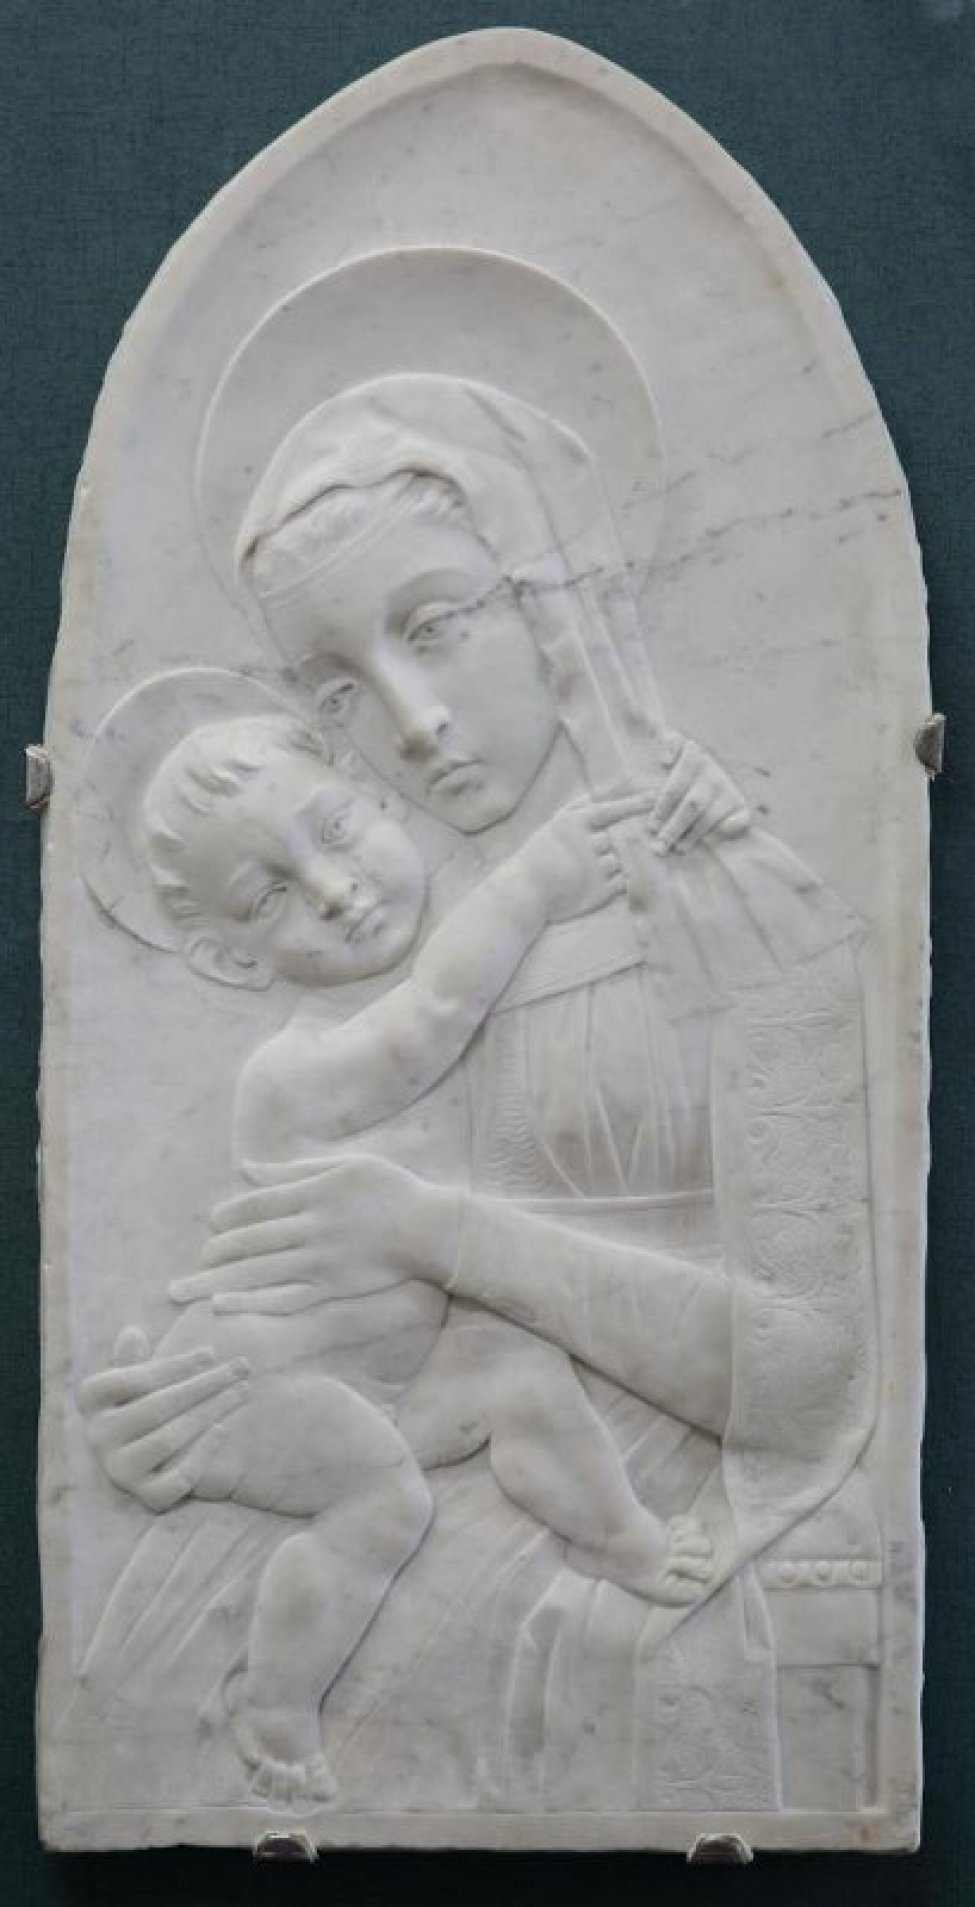 Изображена молодая женщина. Справа у нее на руках находится обнаженный младенец, который обнял женщину за шею.